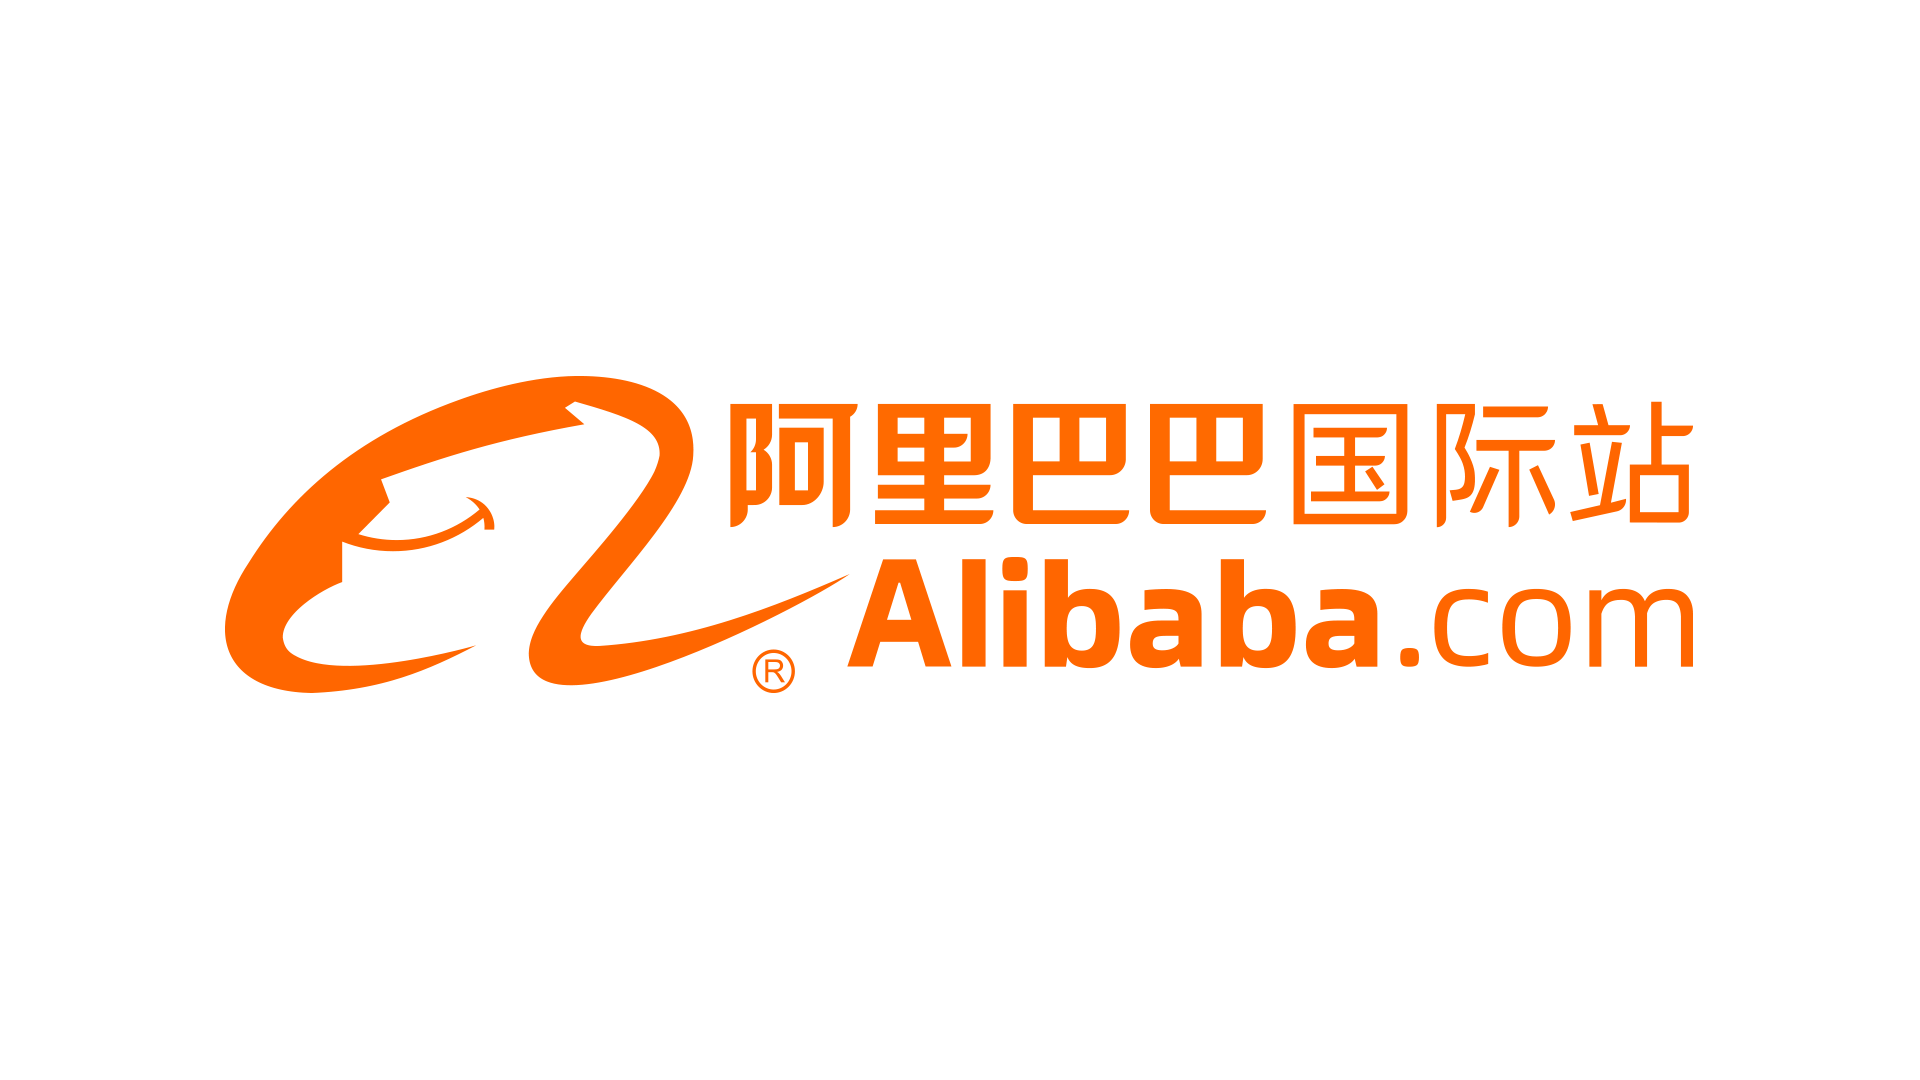 阿里巴巴在北京设立平头哥公司